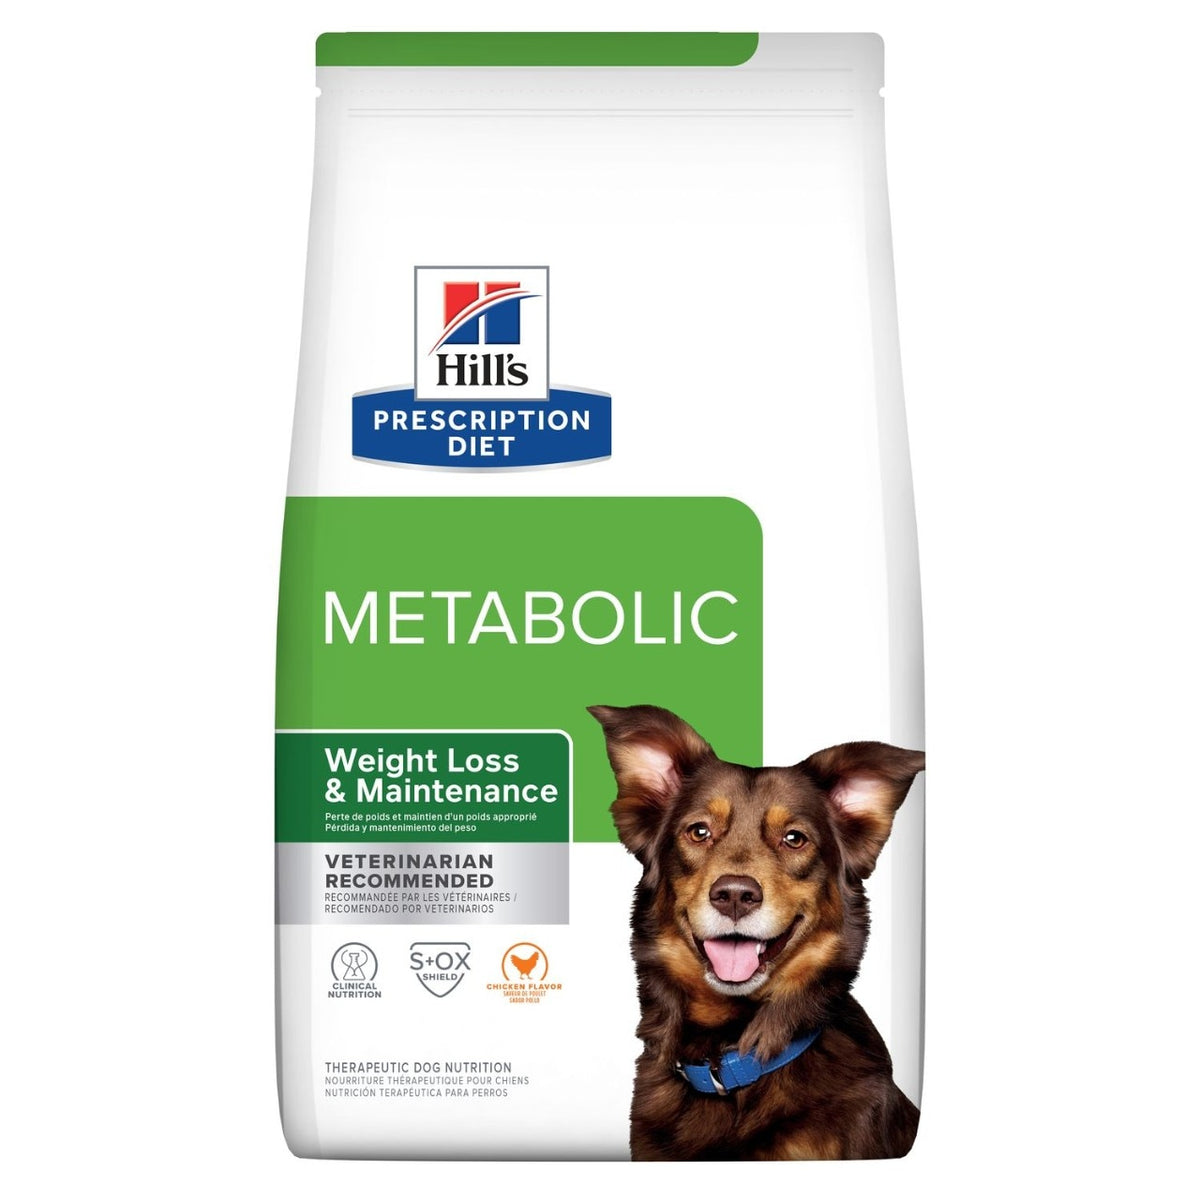 Hills Prescription Diet Metabolic Weight Management Dog